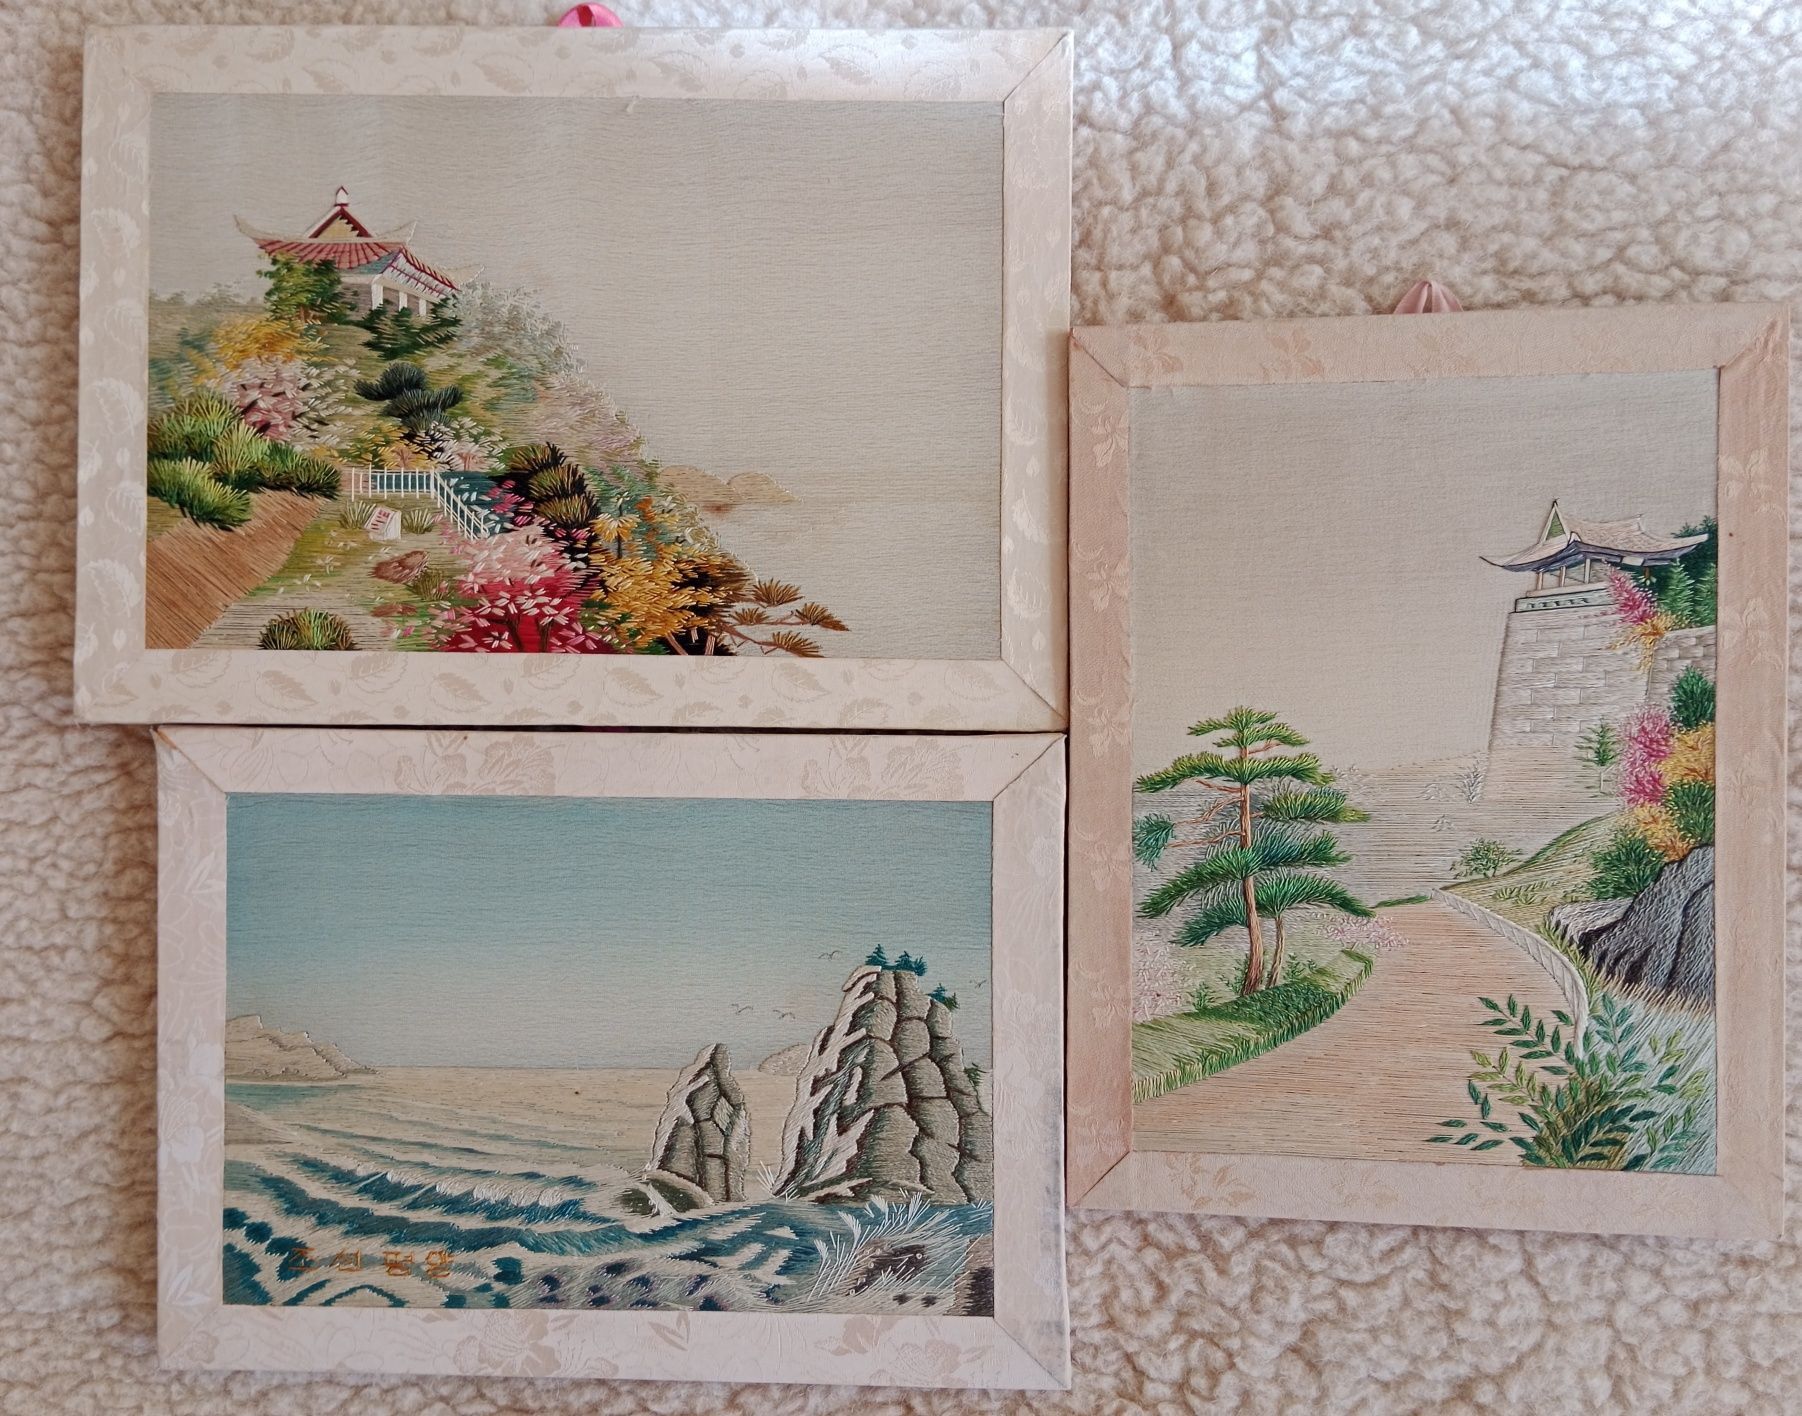 Chińskie obrazki haftowane